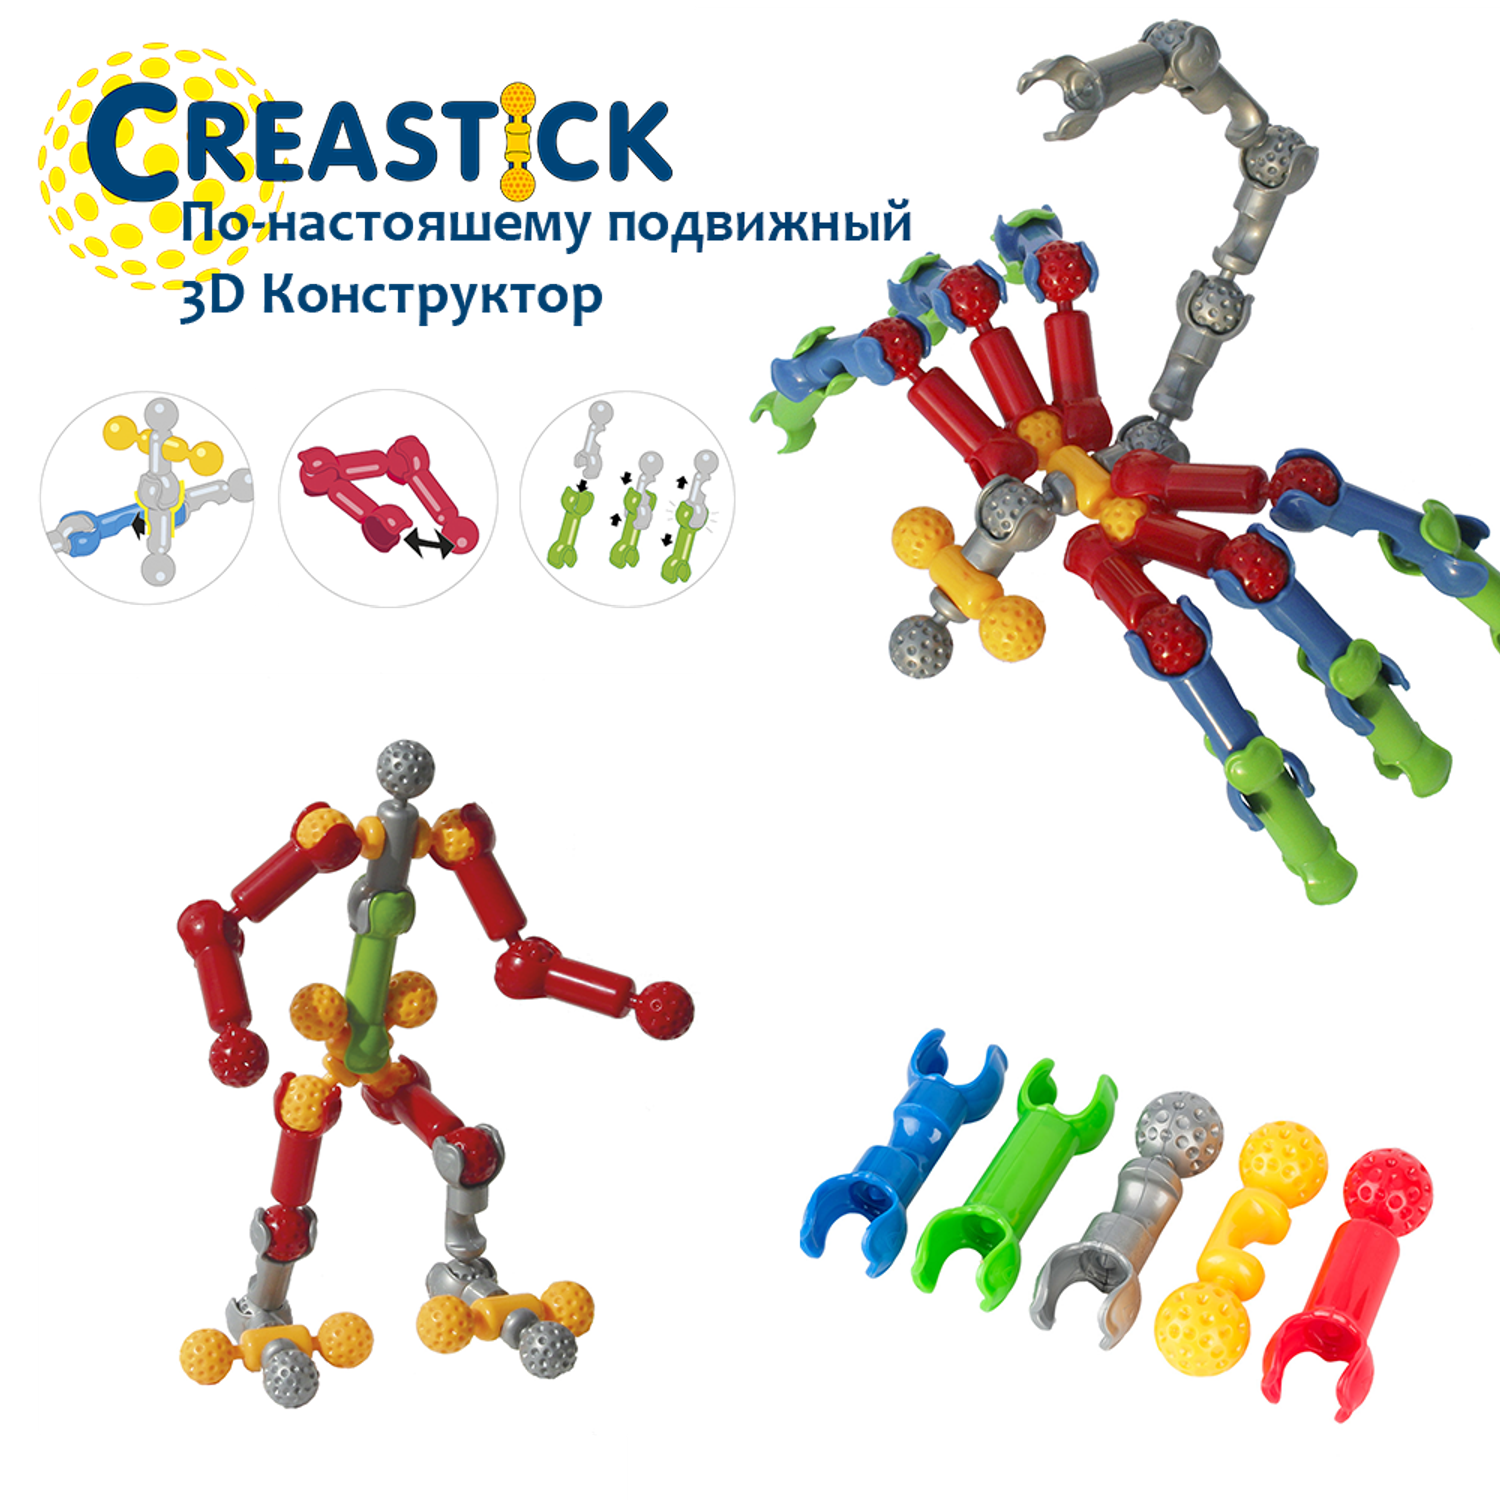 Многовариантный 3D конструктор CREASTICK с подвижными соединениями - фото 1